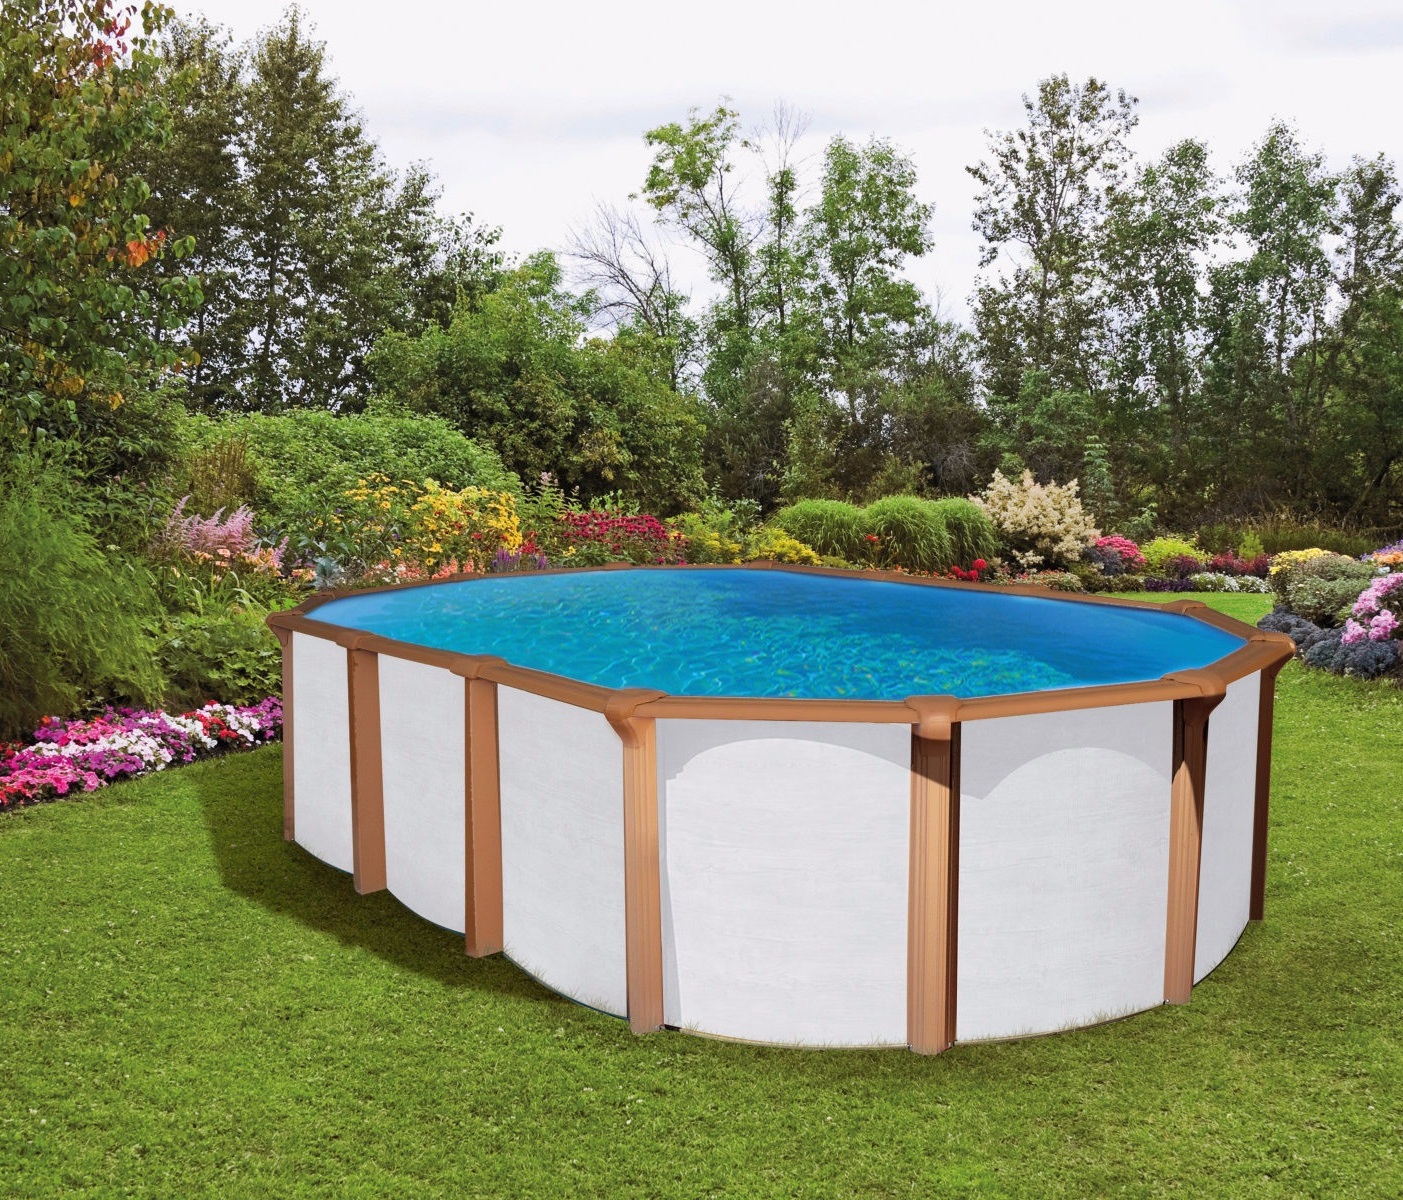 Pool 6,10 x 3,6 x 1,35m white wood Oval Stahlwand Schwimmbecken breiter Handlauf